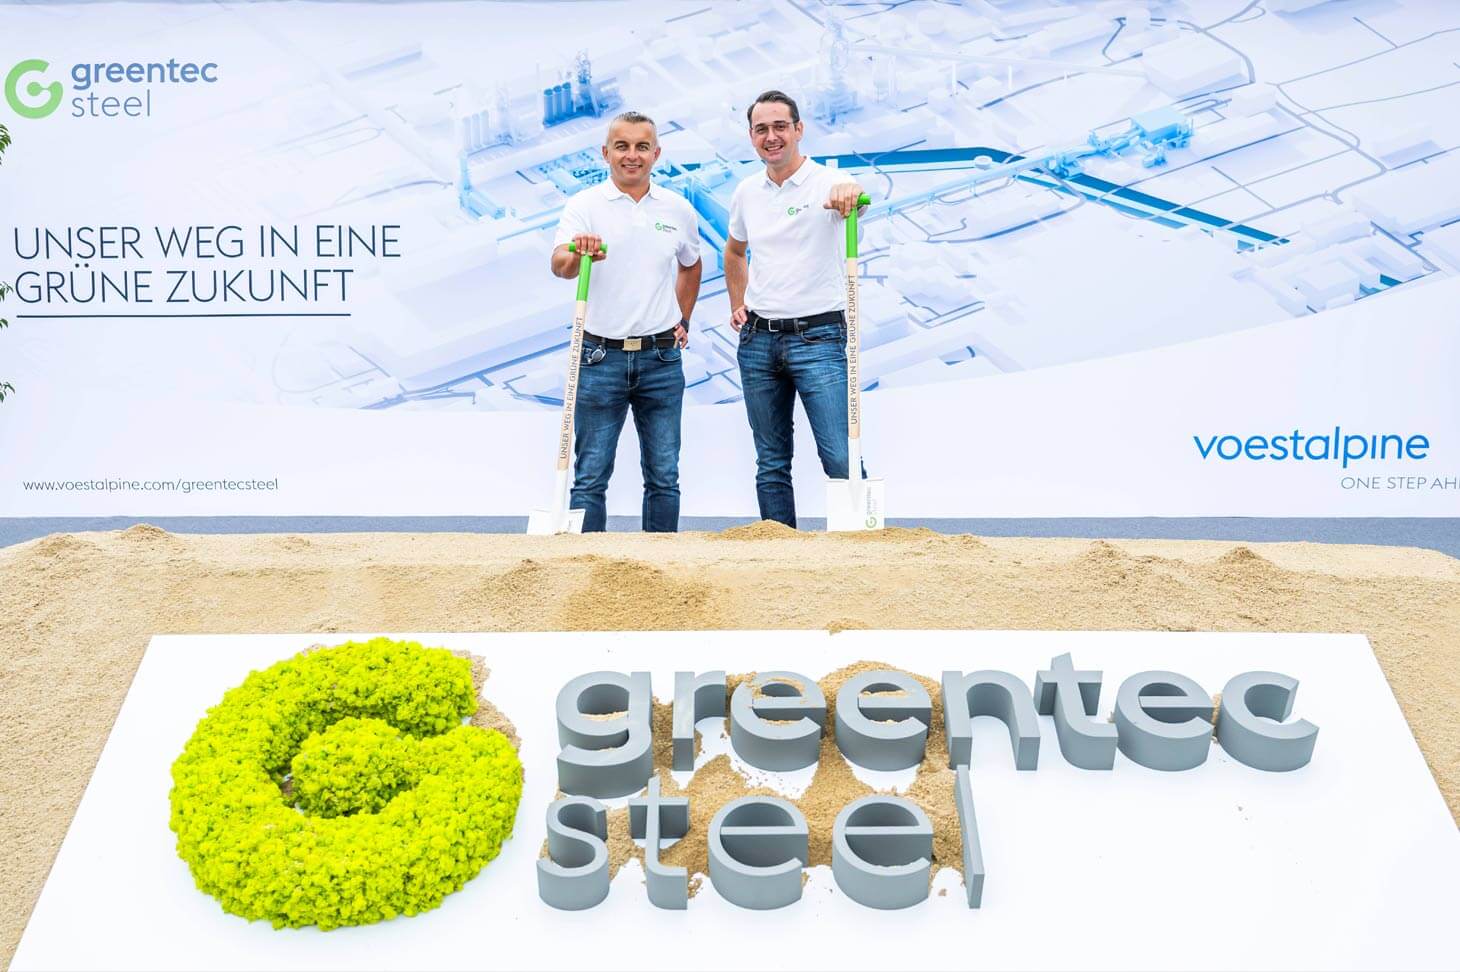 Projektleiter Bernhard K. und Kurt S. nehmen greentec steel Spatensicht vor